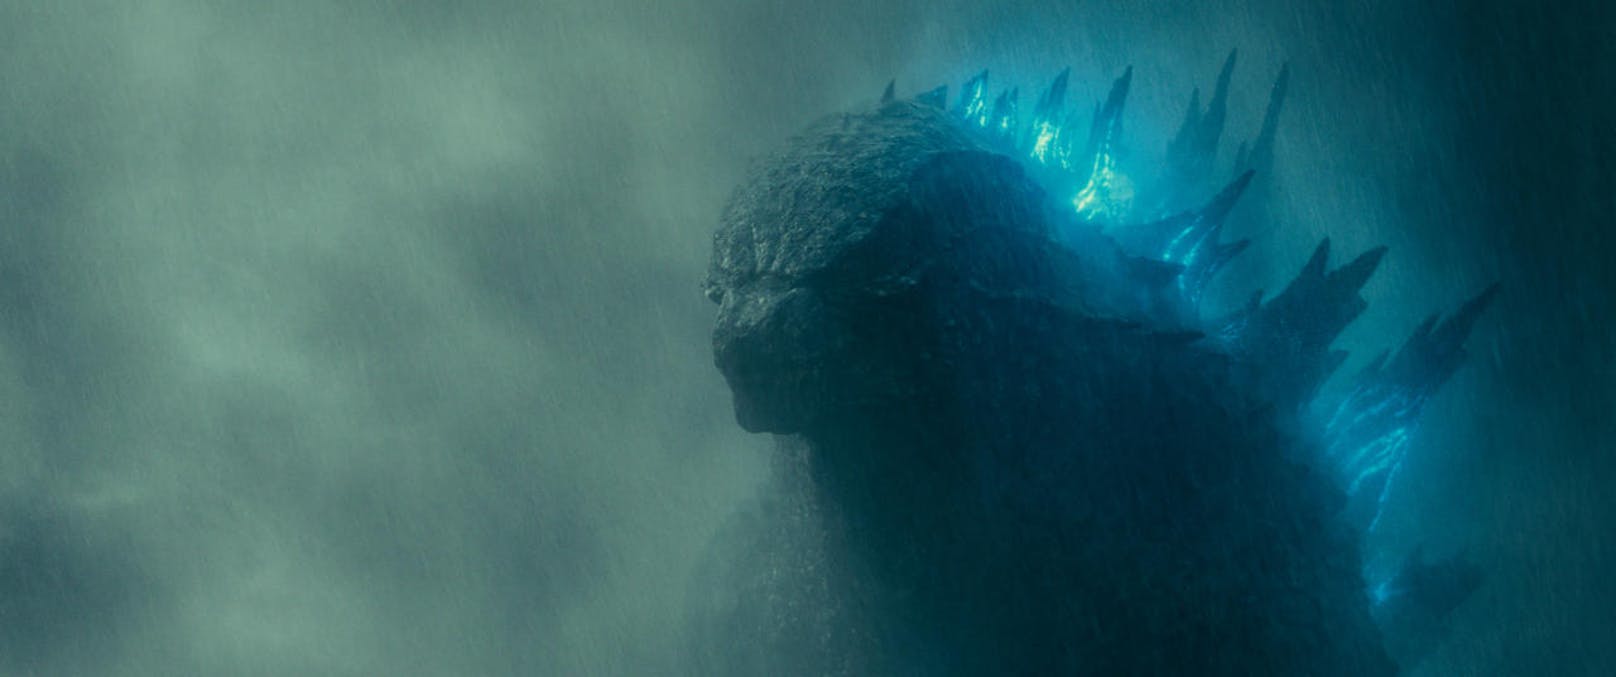 Als die "Titanen", überdimensionale Monster, die früher über die Erde herrschten, wiederauferstehen, erscheint auch Godzilla auf der Bildfläche. Die Riesenechse geht auf die Jagd und hinterlässt dabei eine Spur der Zerstörung.